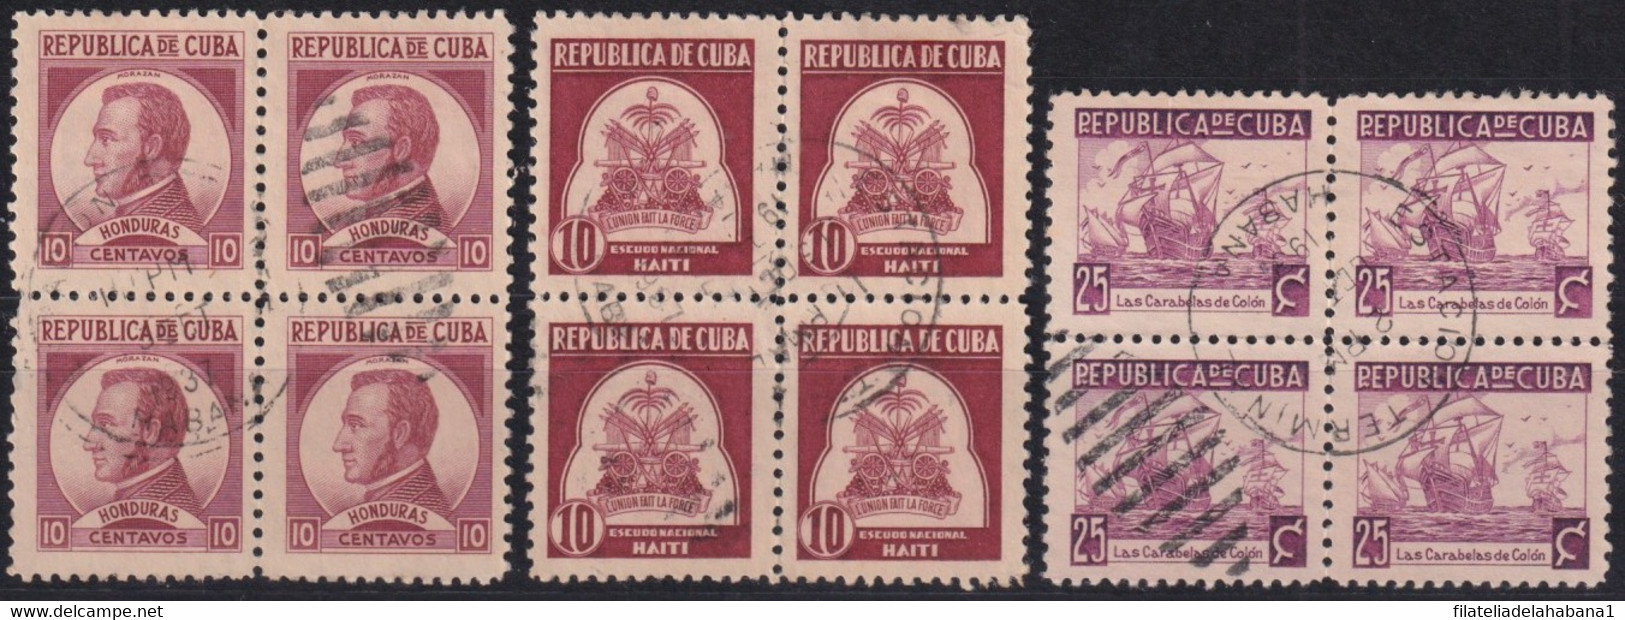 1937-442 CUBA REPUBLICA 1937 WRITTER & ARTIST CANCELLED BLOCK 4. - Oblitérés